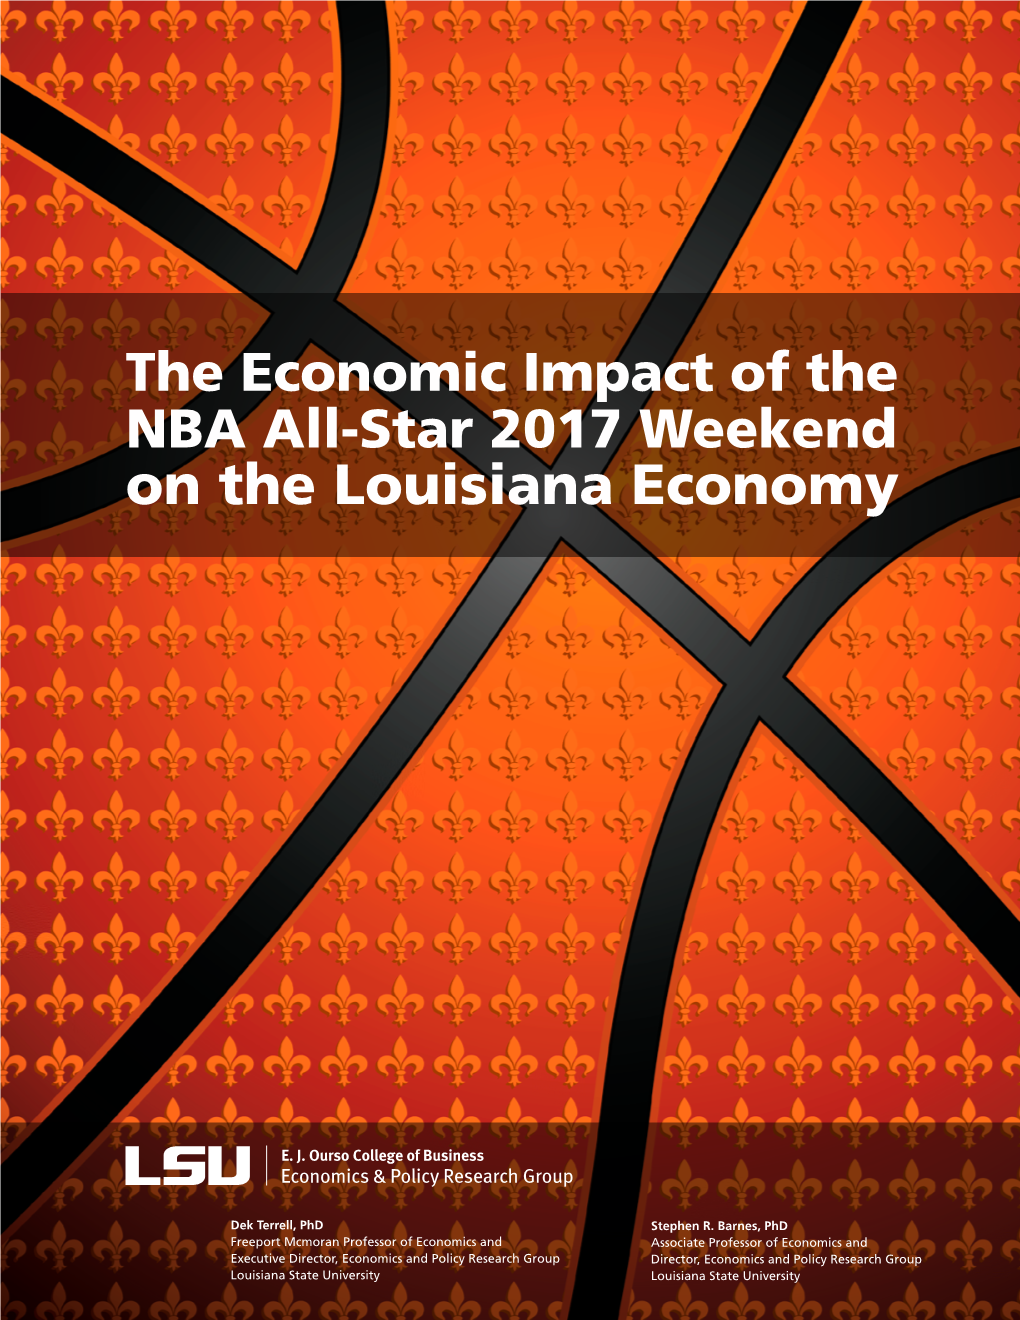 On the Louisiana Economy